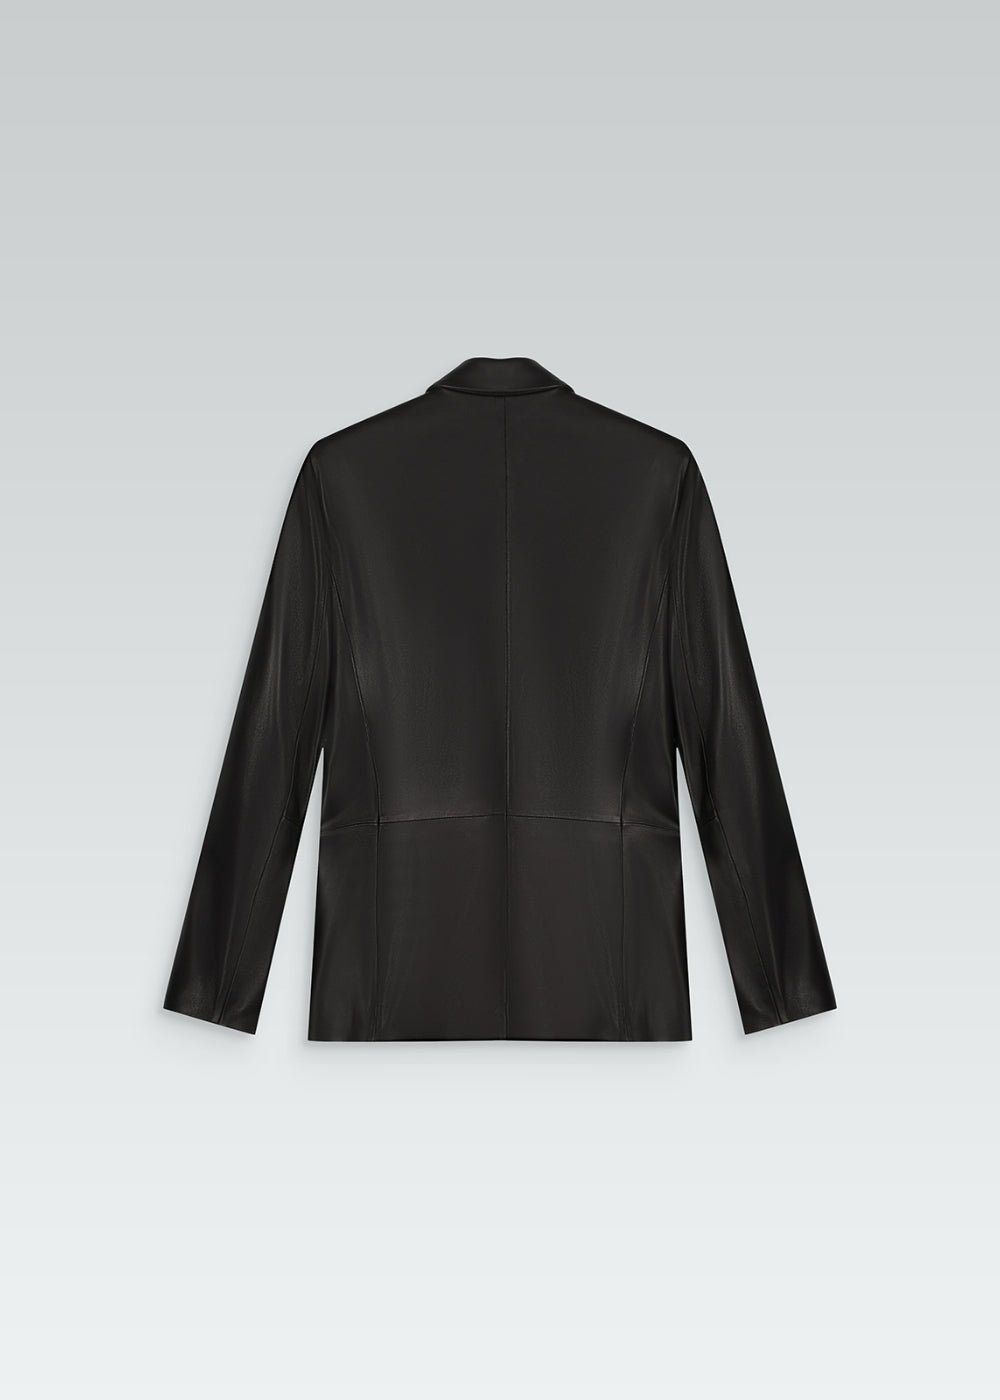 Veste tailleur en cuir noir avec col tailleur, poches à rabat et 6 boutons 